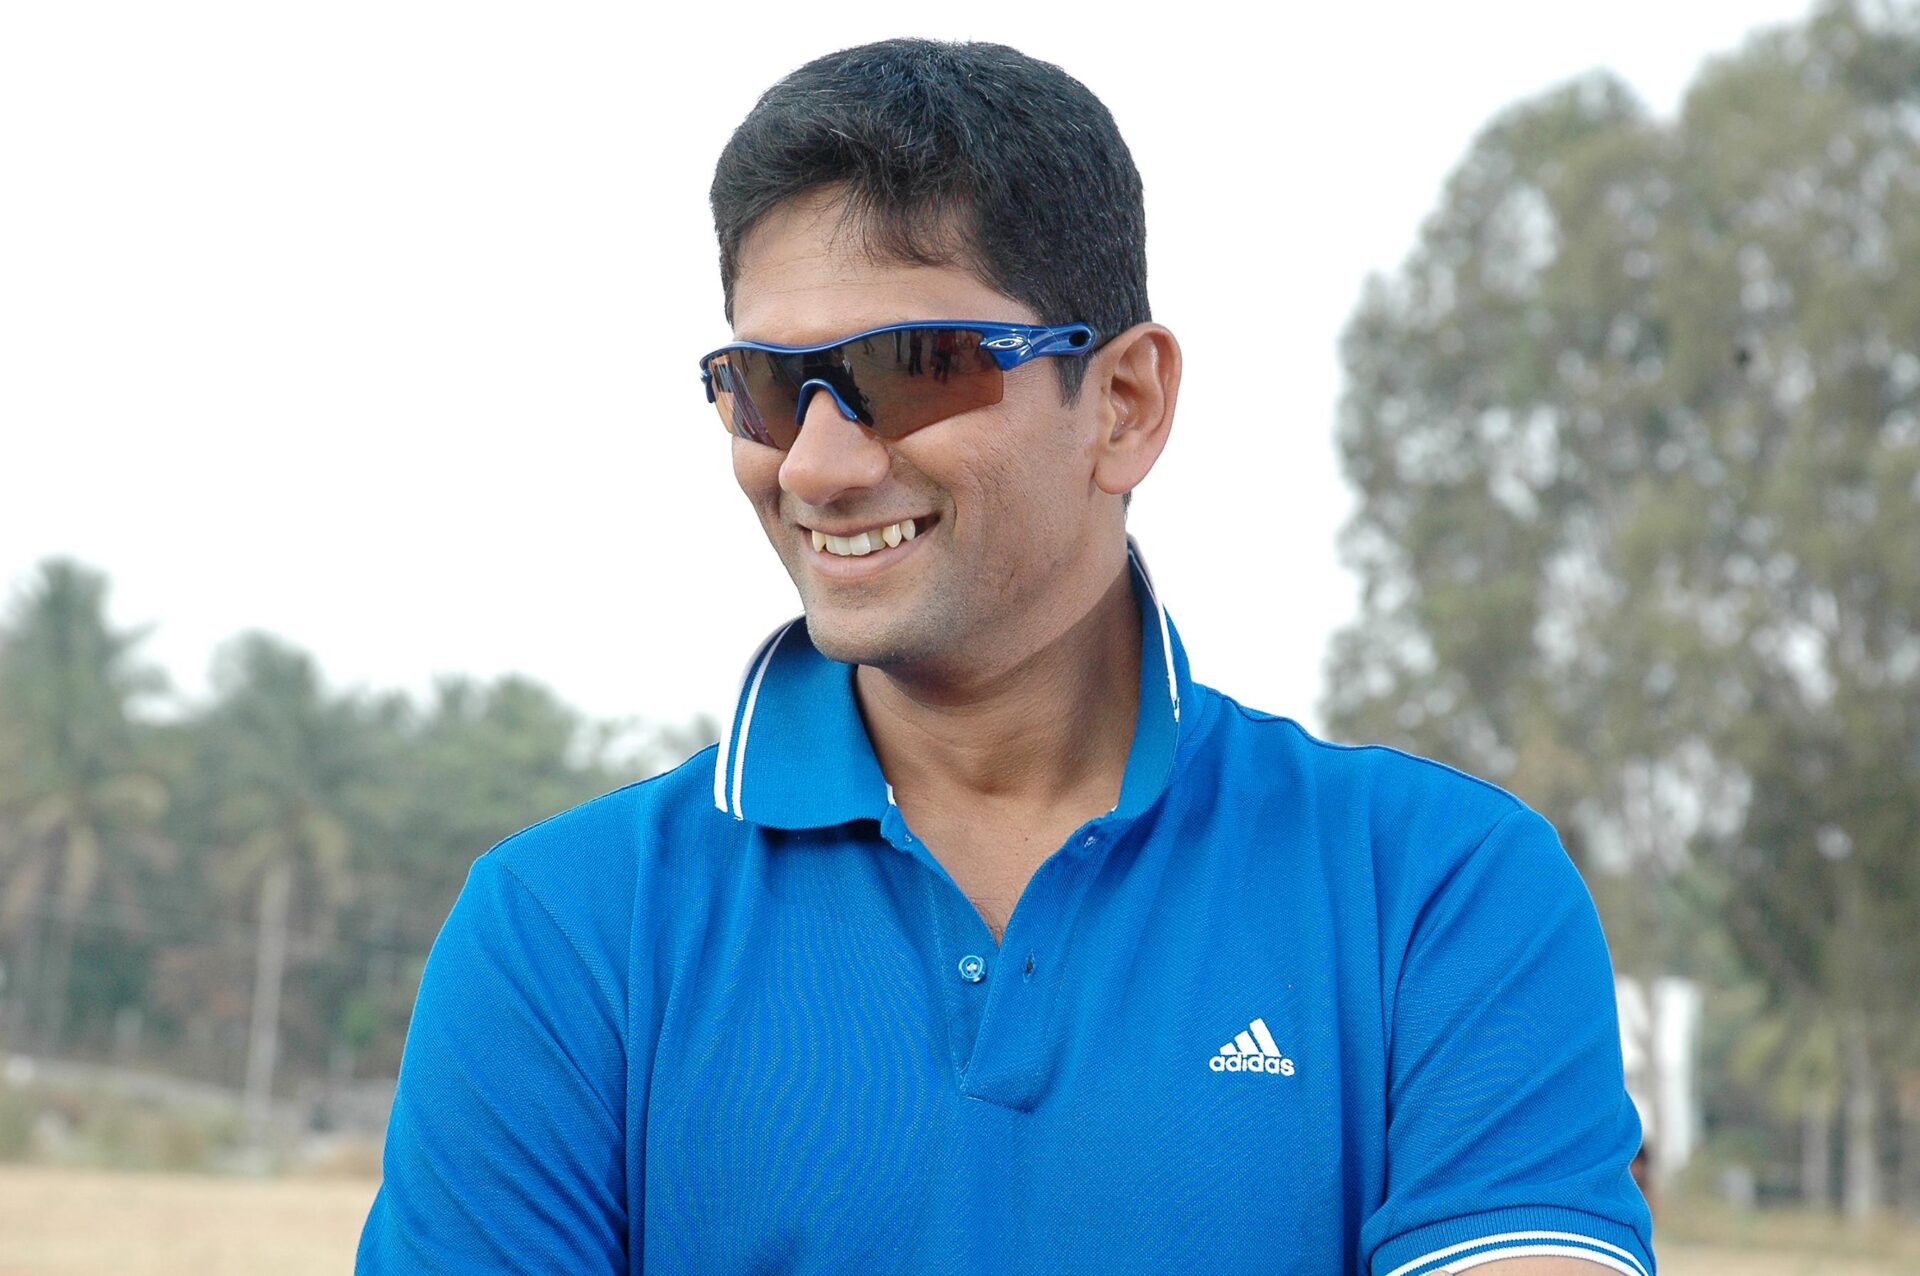 venkatesh-prasad-post-image. Venkatesh Prasad set to coach in APL- 2018